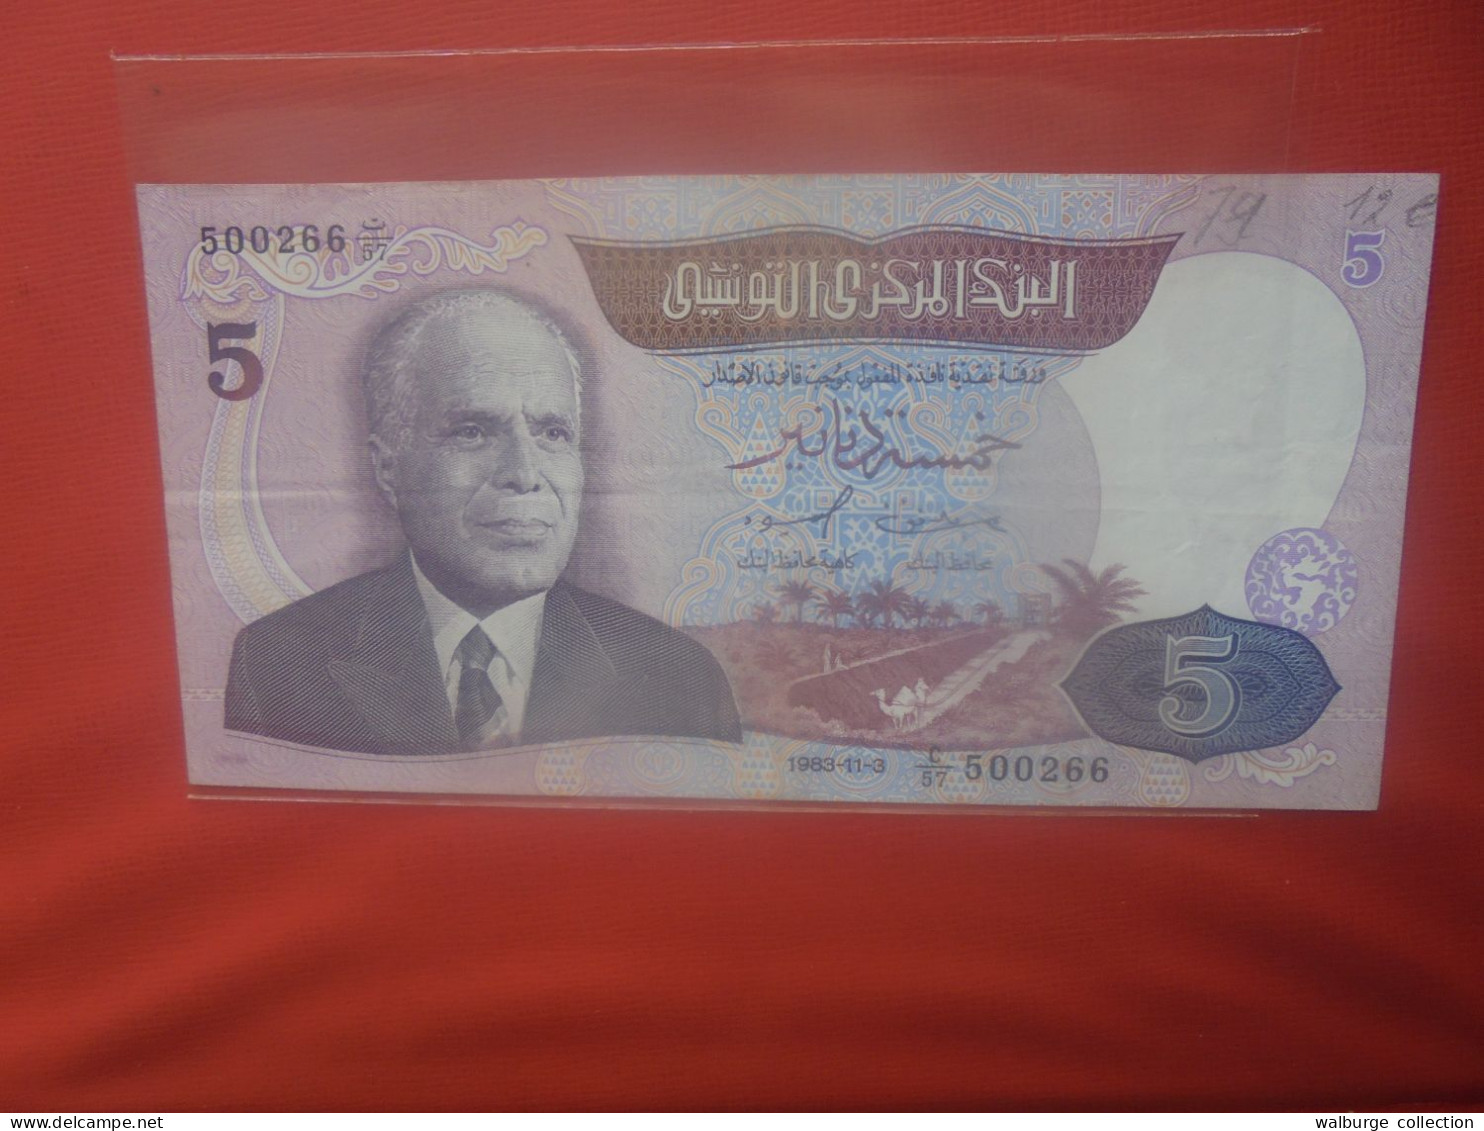 TUNISIE 5 DINARS 1983 Circuler (B.30) - Tunisie